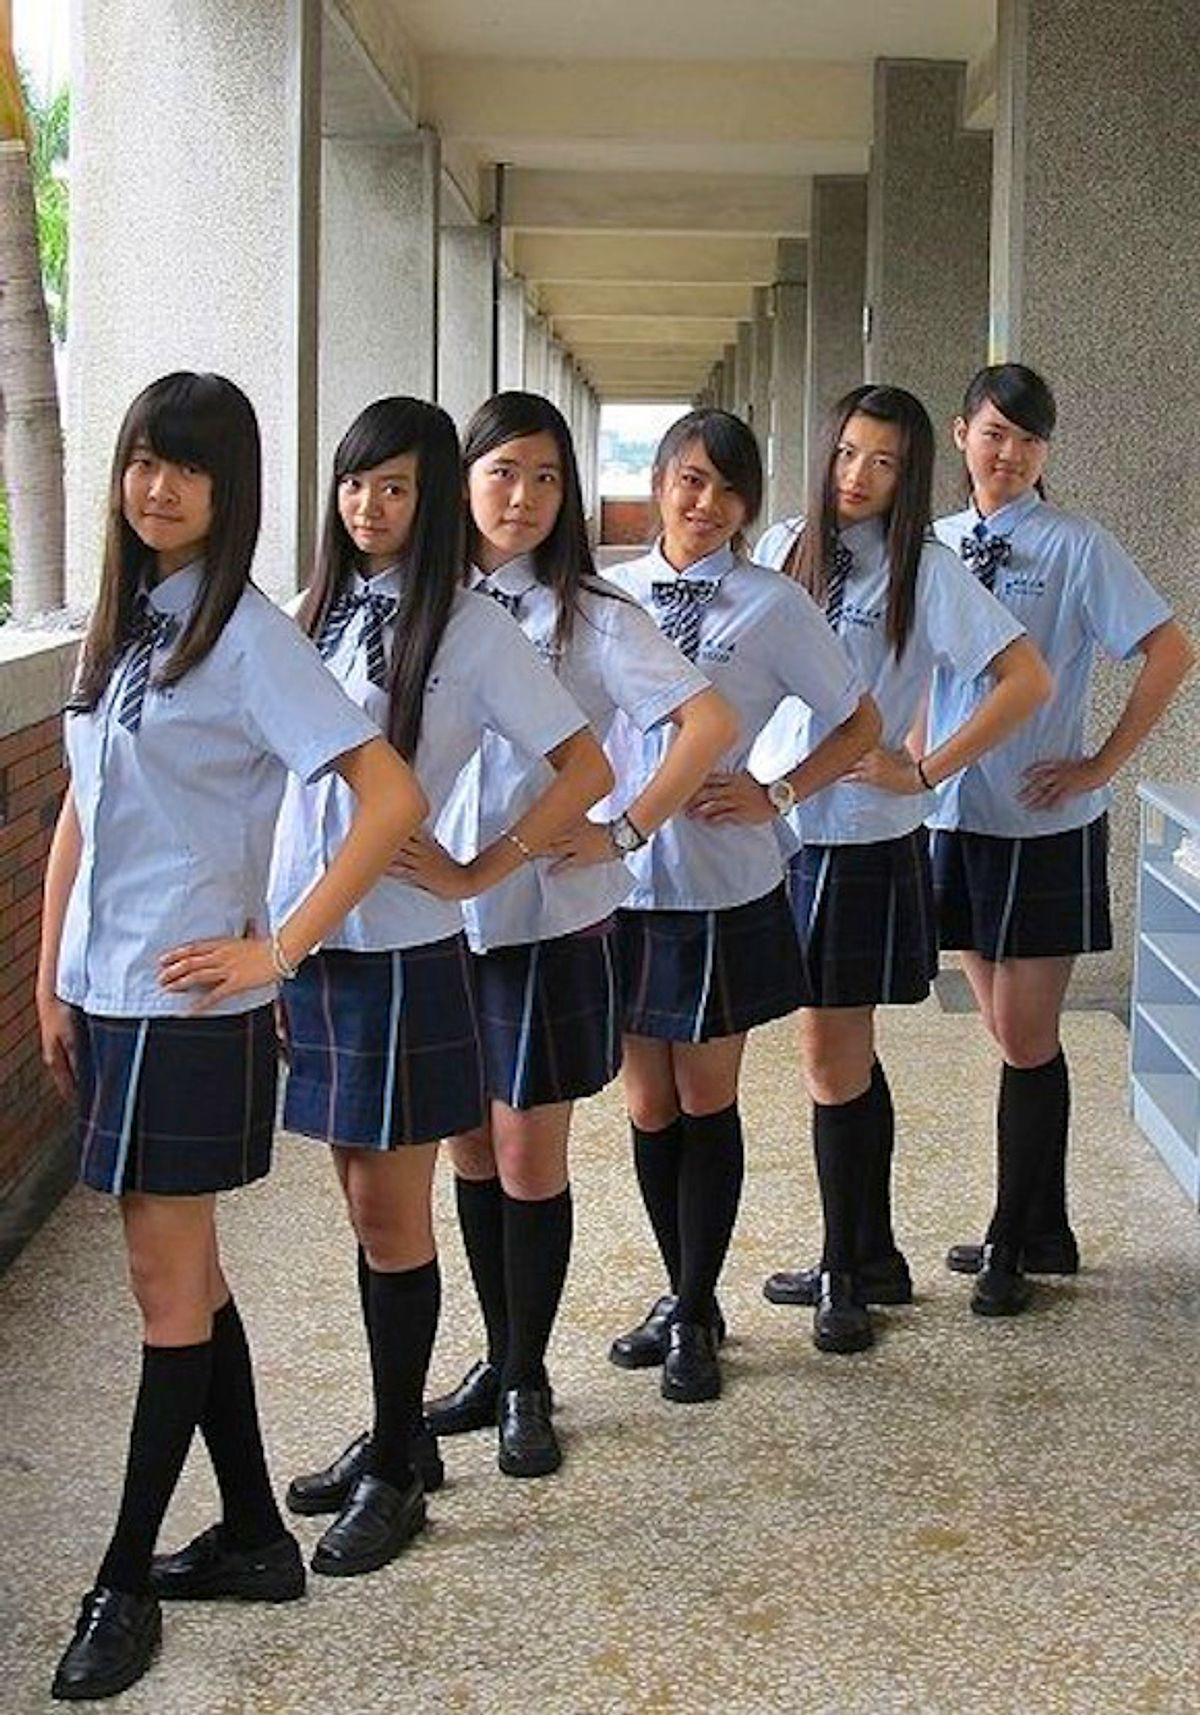 Schoolgirls forum. Форма старшей школы в Японии. Школьная форма в Японии средняя школа. Японские школьники.